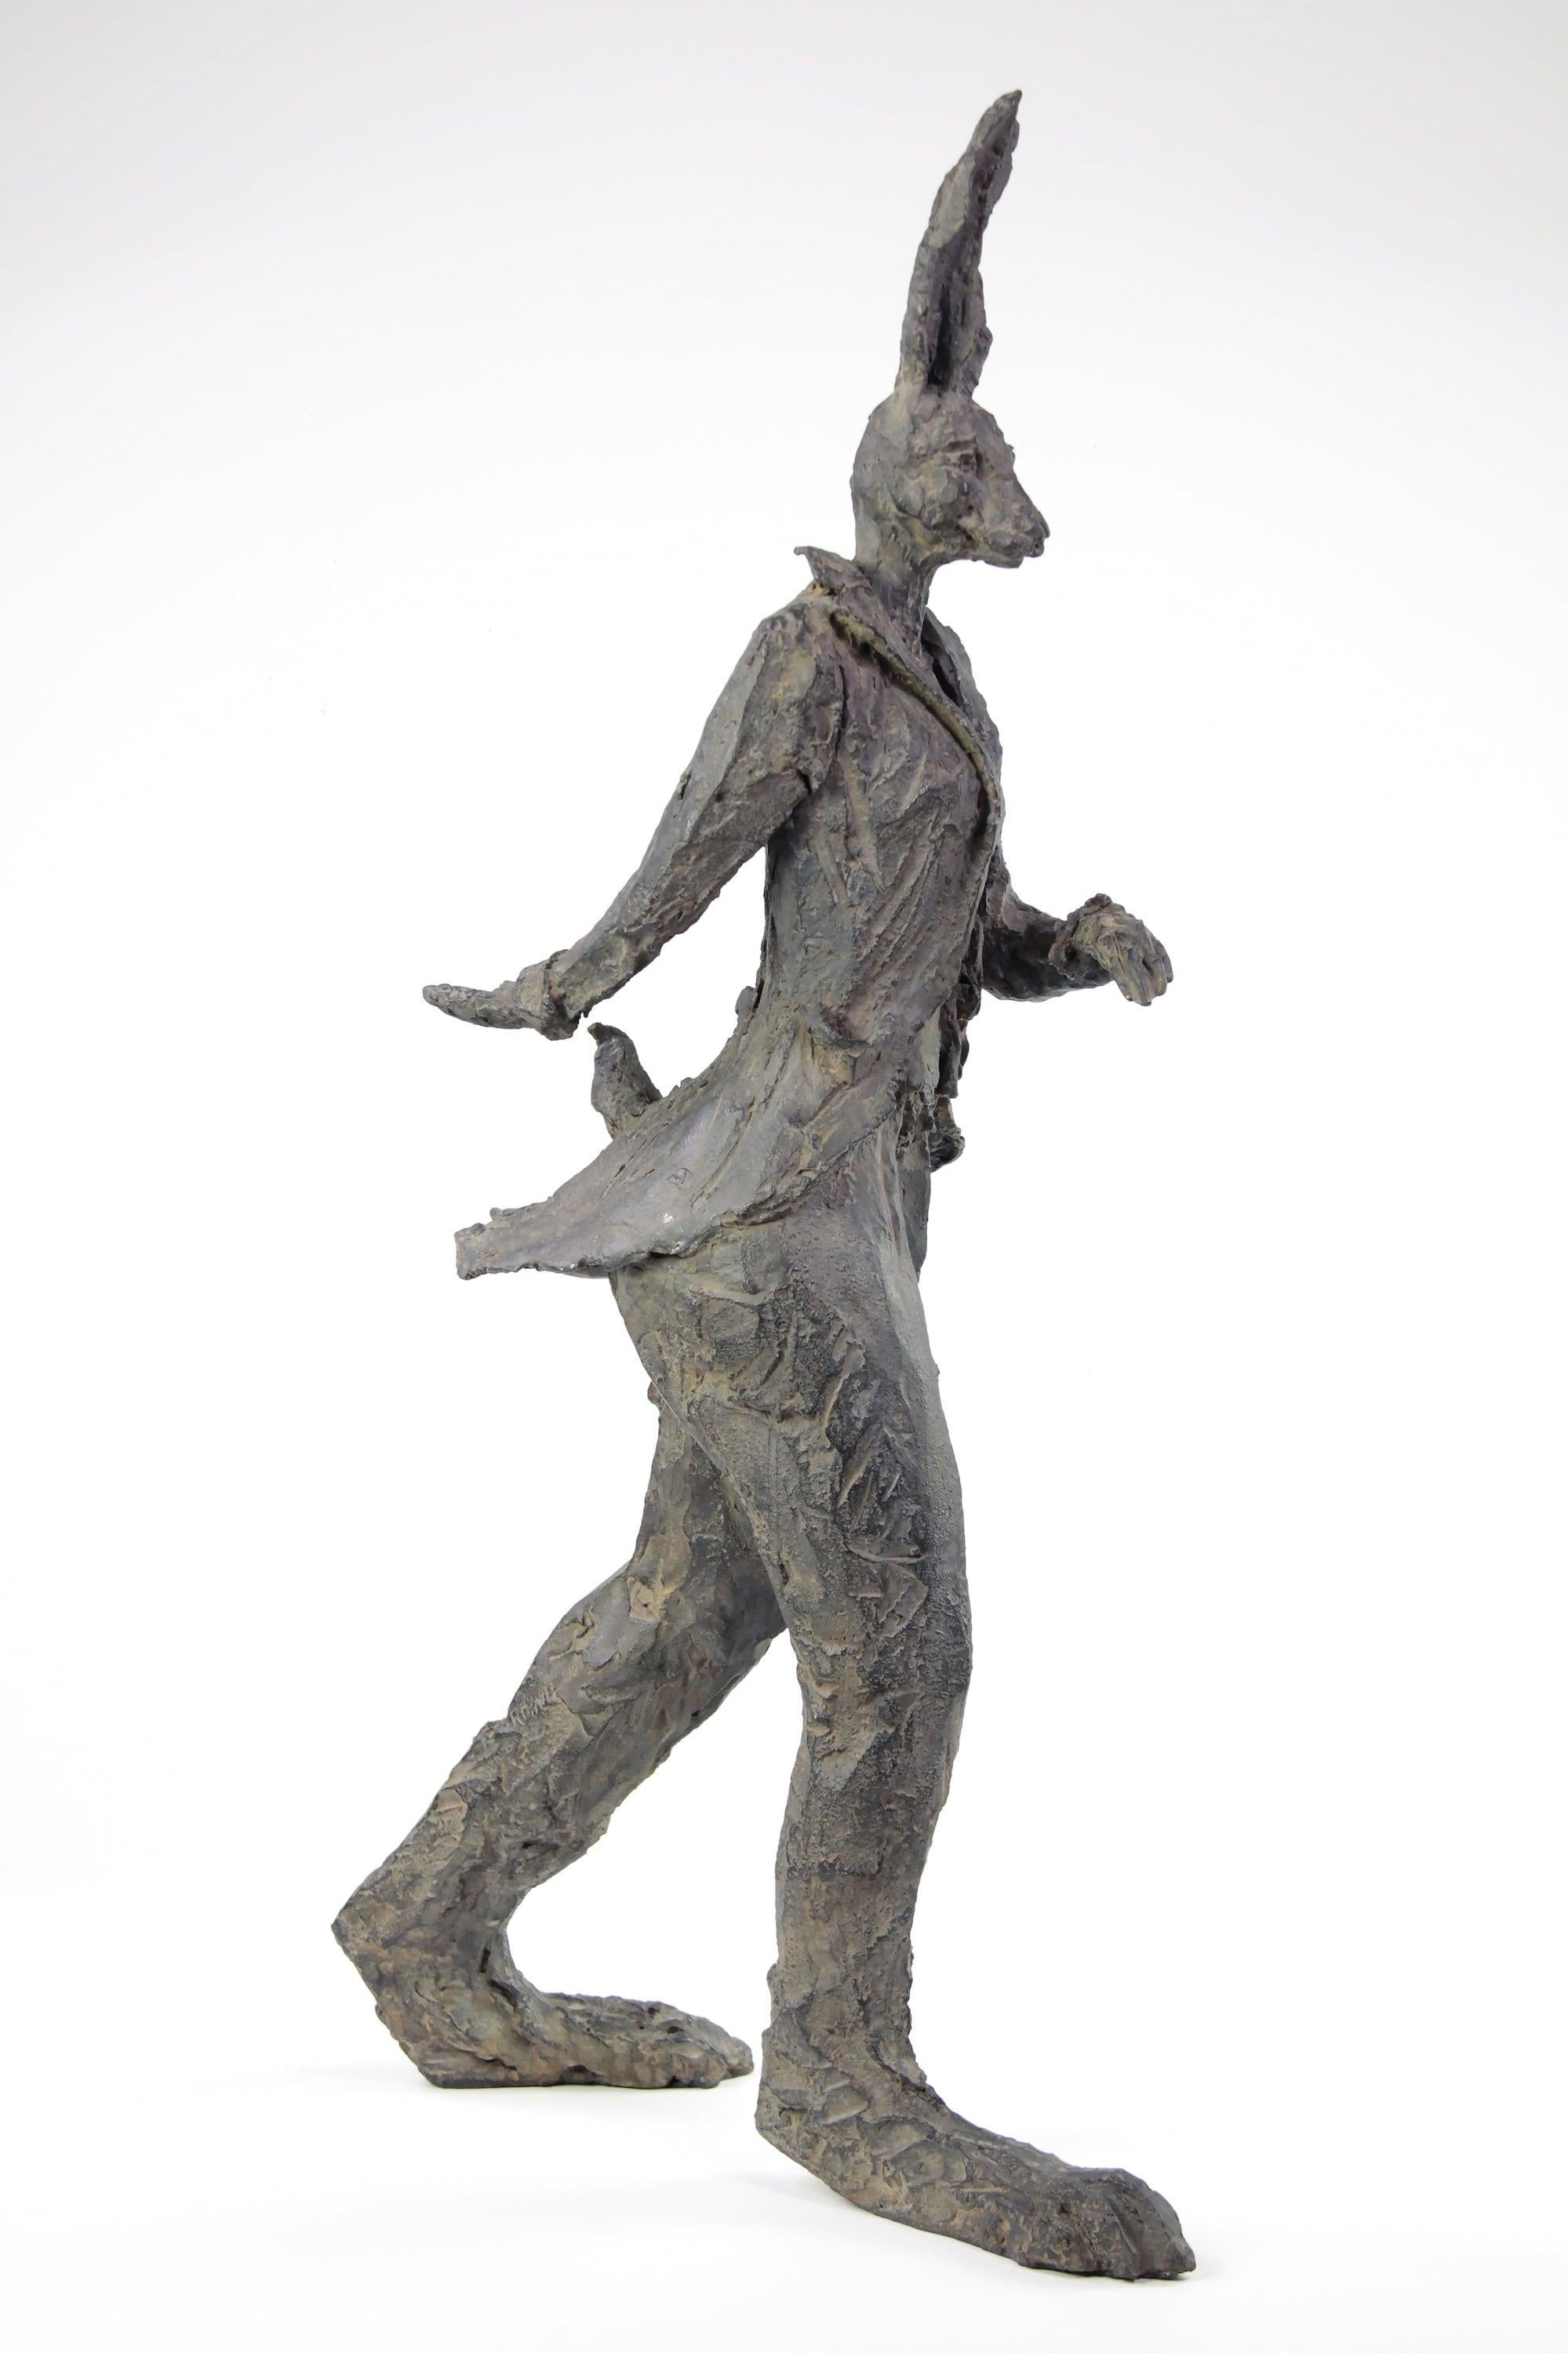 Hase qui marche est une sculpture en bronze de l'artiste contemporaine française Cécile Raynal.
75 cm × 37 cm × 20 cm. Edition limitée de 8 moulages + 4 épreuves d'artiste.
Cette pièce en bronze représente un lièvre féminin debout, portant une veste